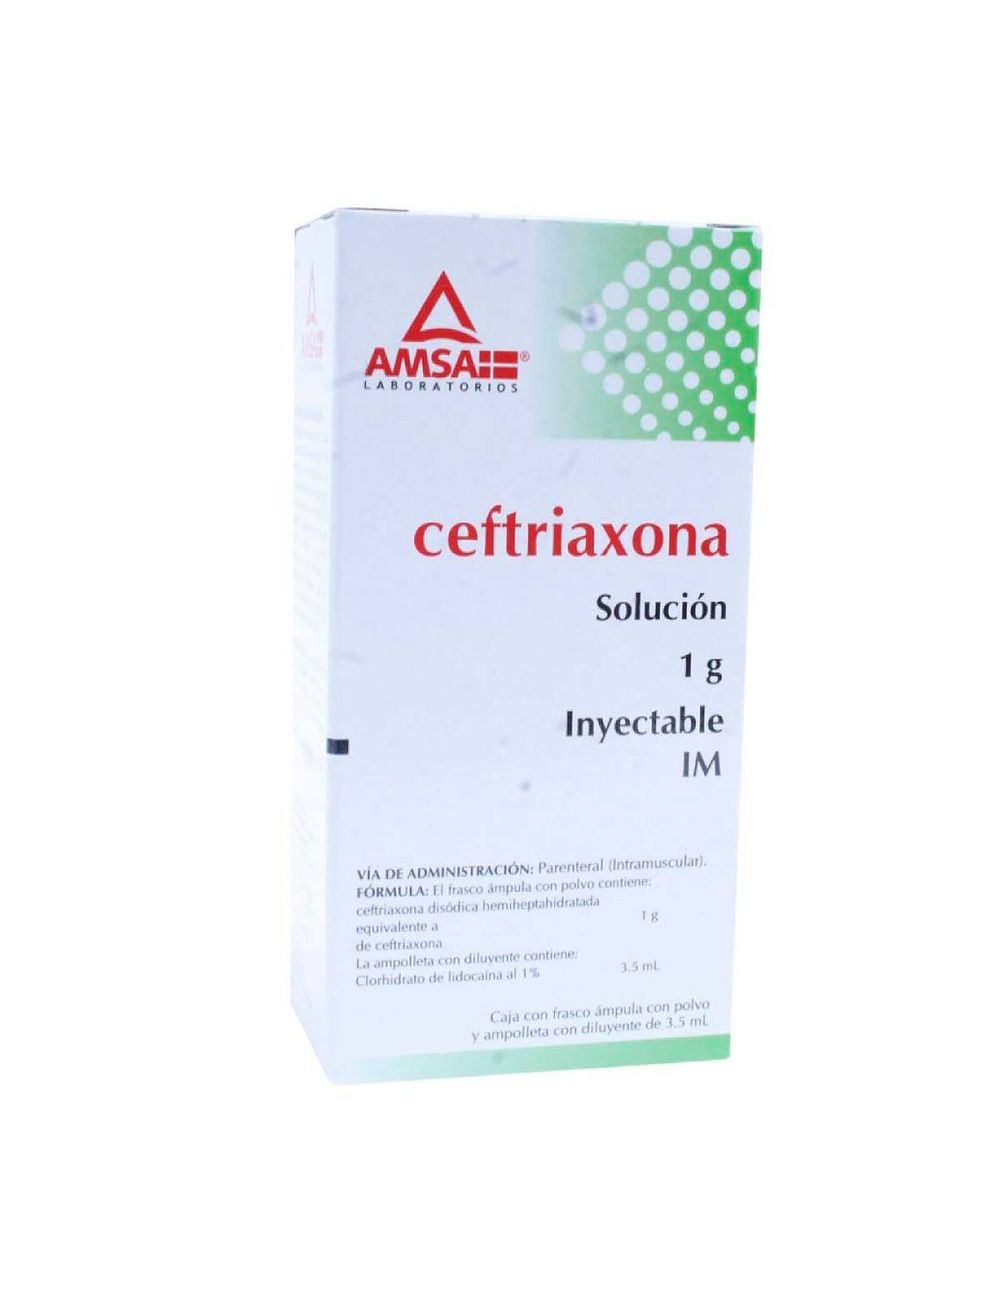 Ceftriaxona IM 1G 3.5Ml - RX2